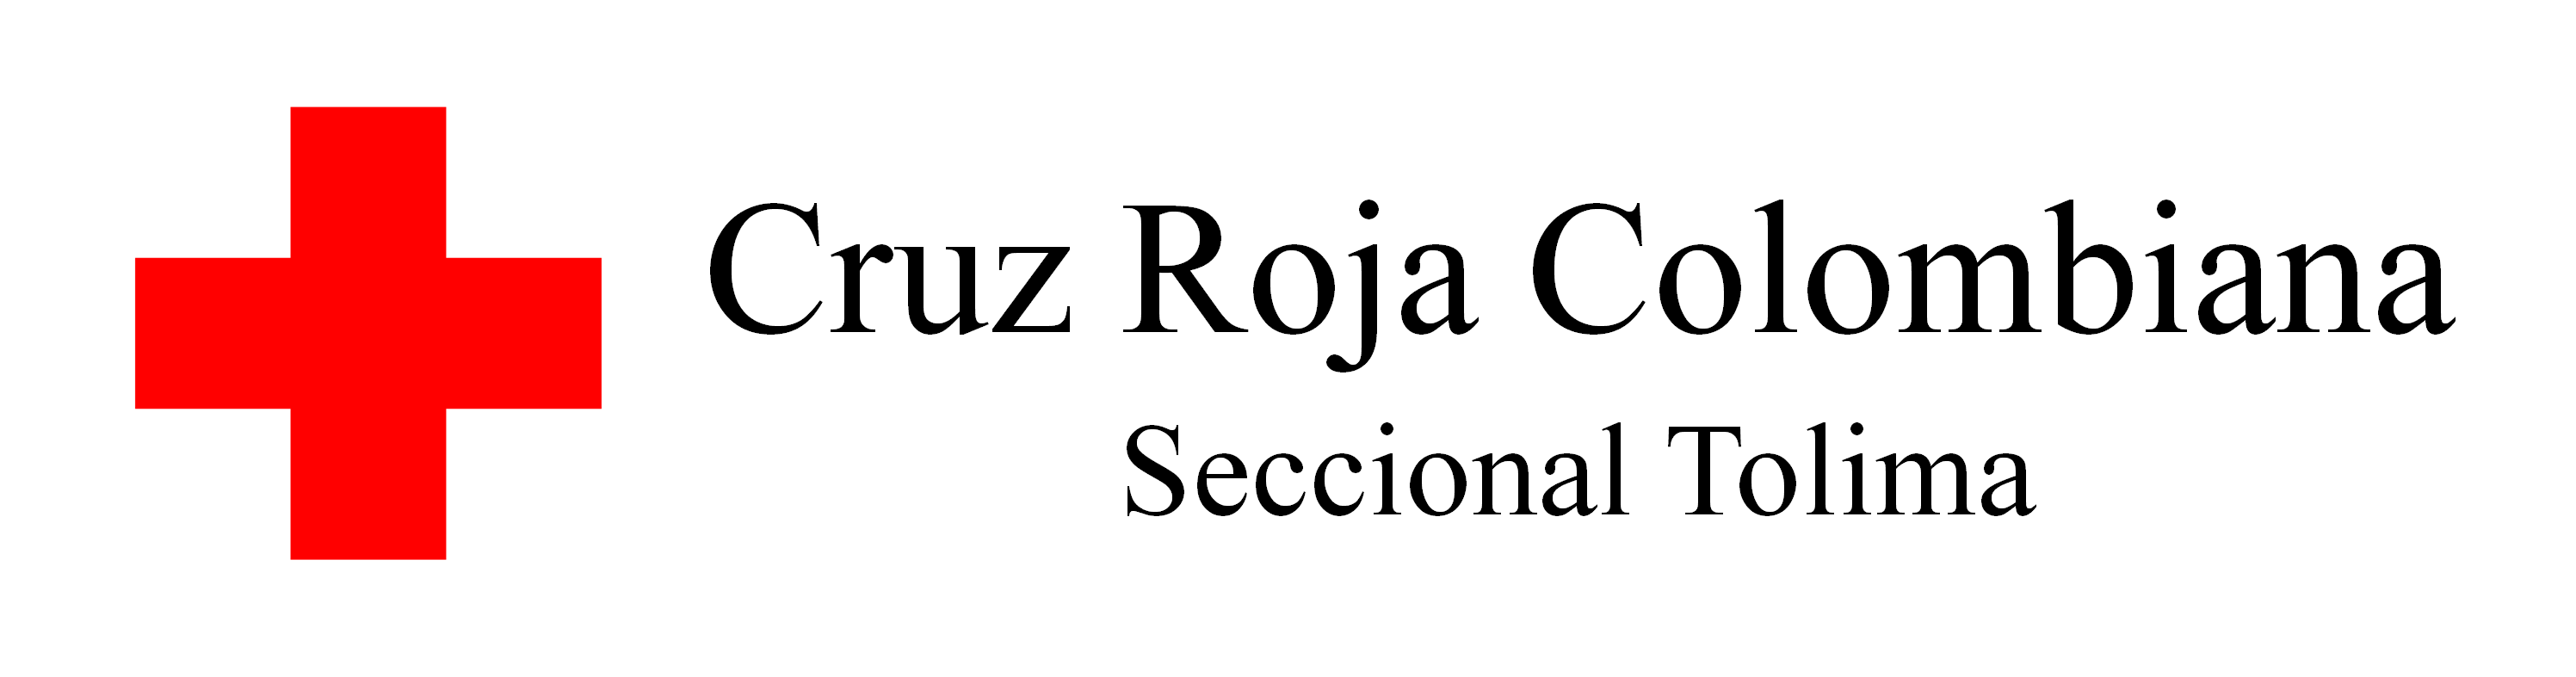 Cruz Roja Colombiana | Seccional Tolima